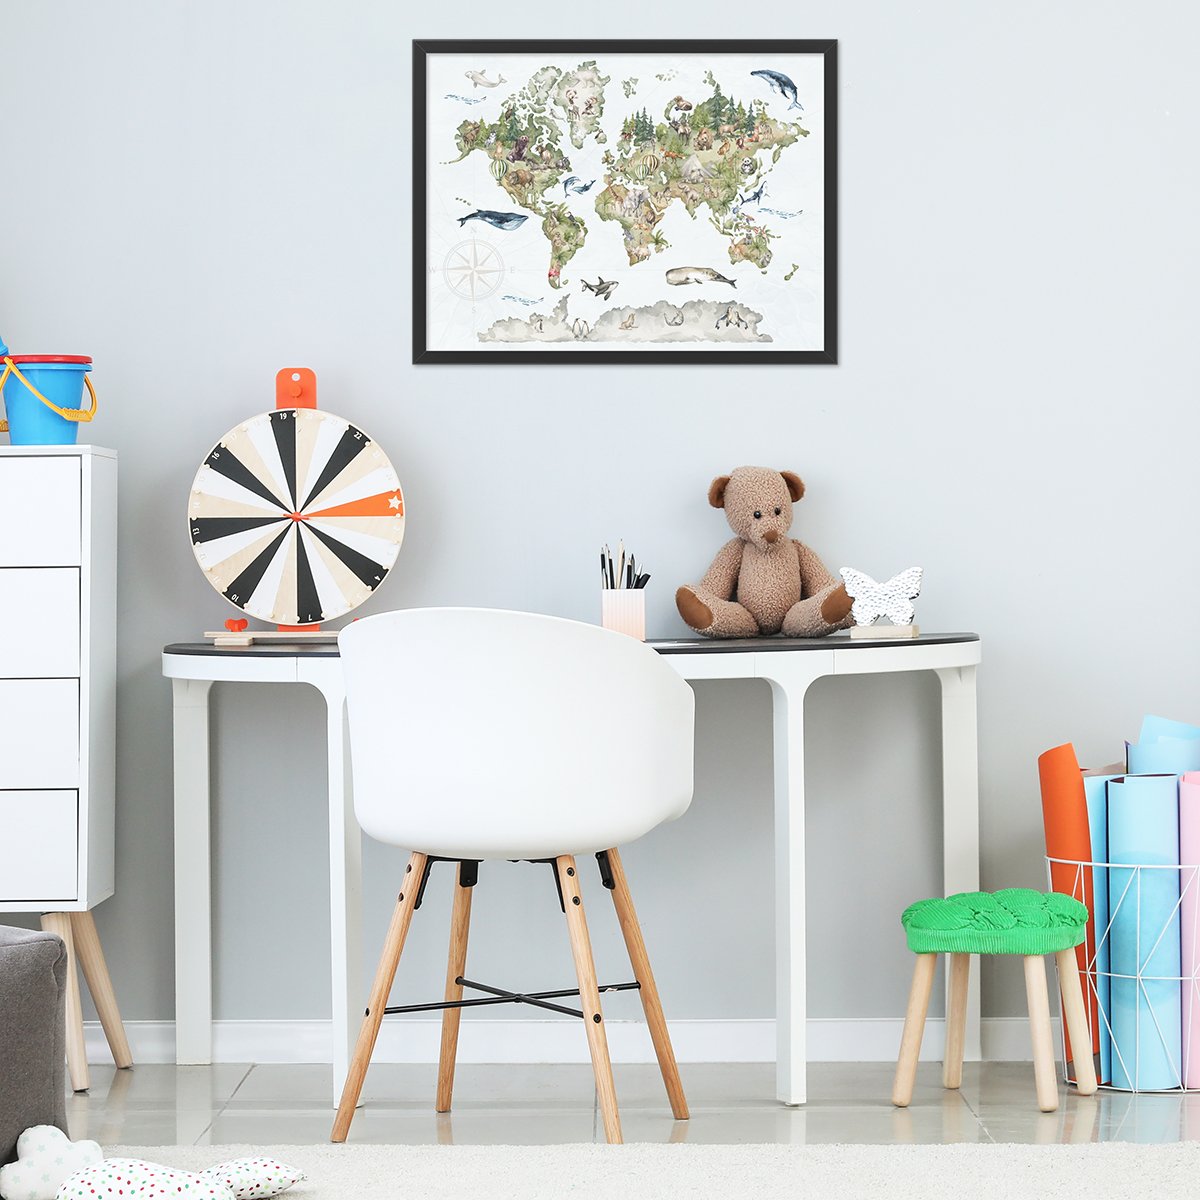 Plakat do pokoju dziecięcego 50x70 cm w czarnej ramce kolorowa mapa świata ze zwierzętami powieszony nad biurkiem